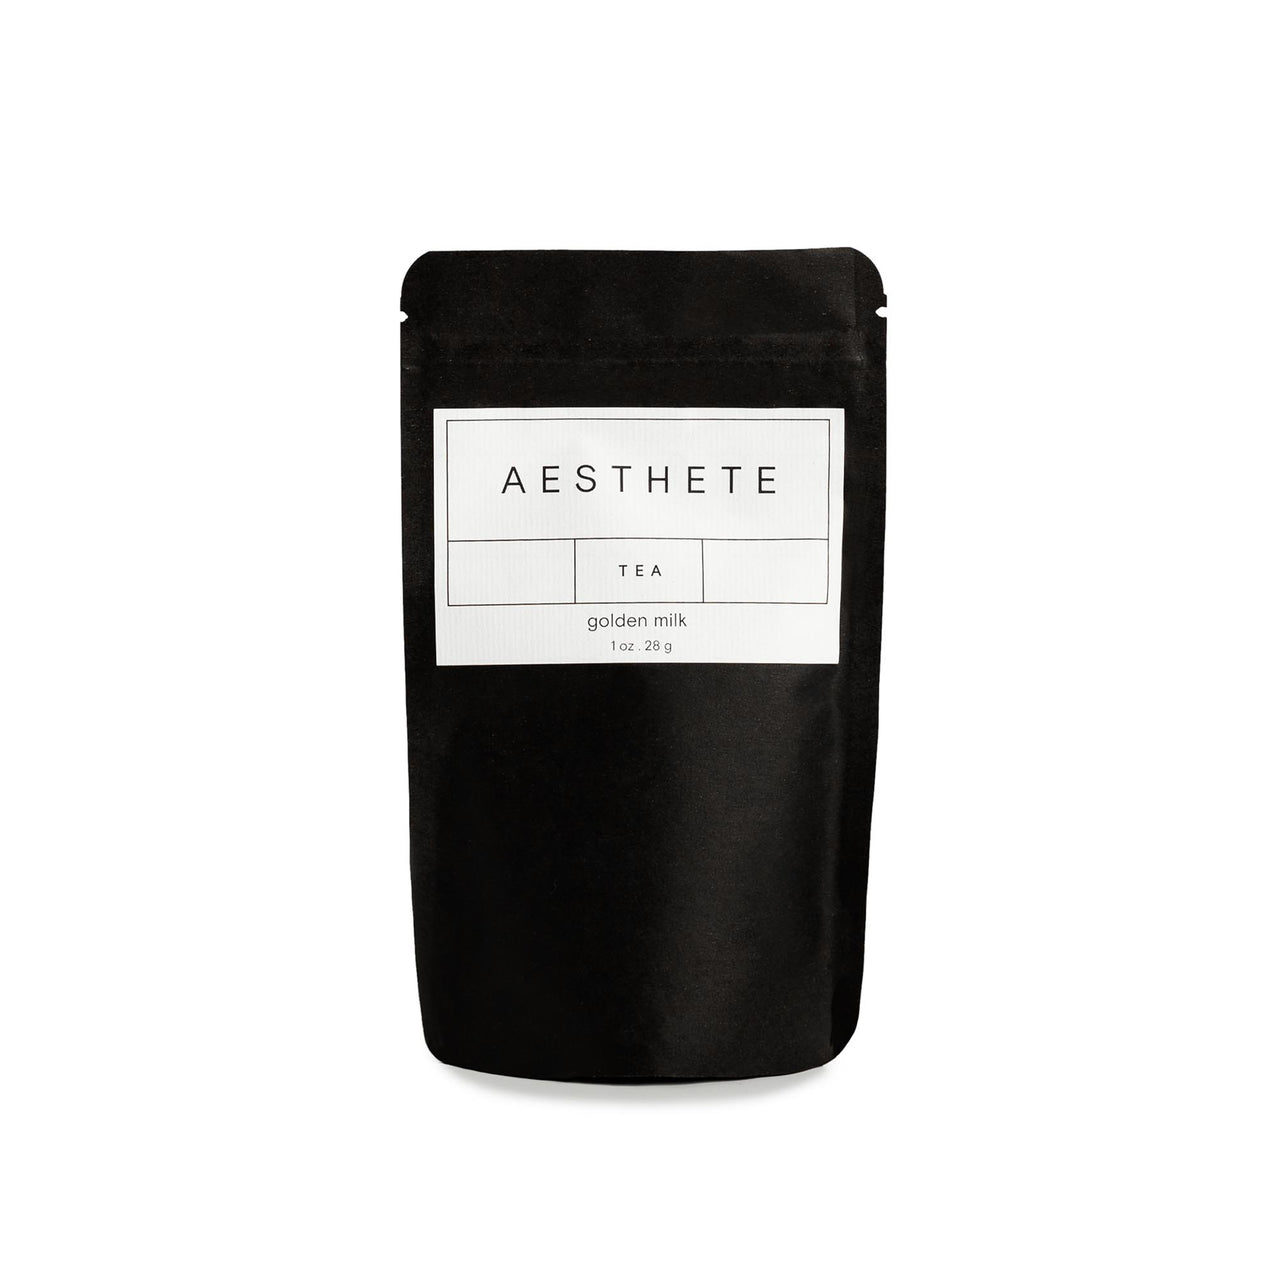 Aesthete Tea - Golden Milk